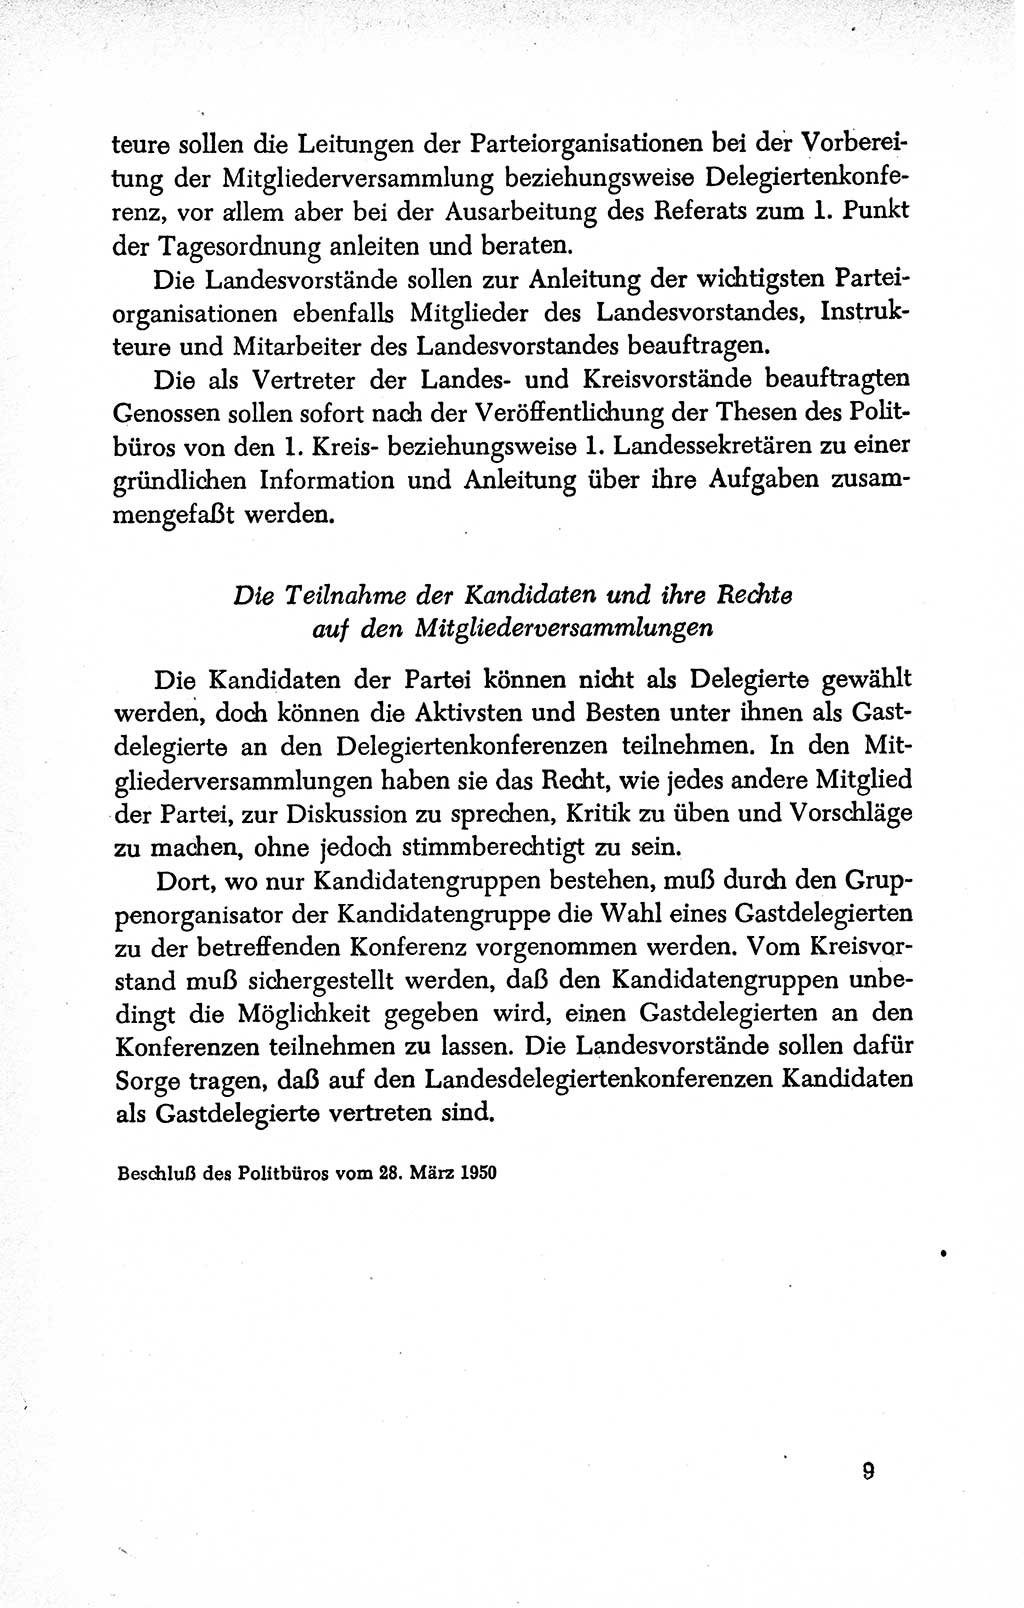 Dokumente der Sozialistischen Einheitspartei Deutschlands (SED) [Deutsche Demokratische Republik (DDR)] 1950-1952, Seite 9 (Dok. SED DDR 1950-1952, S. 9)